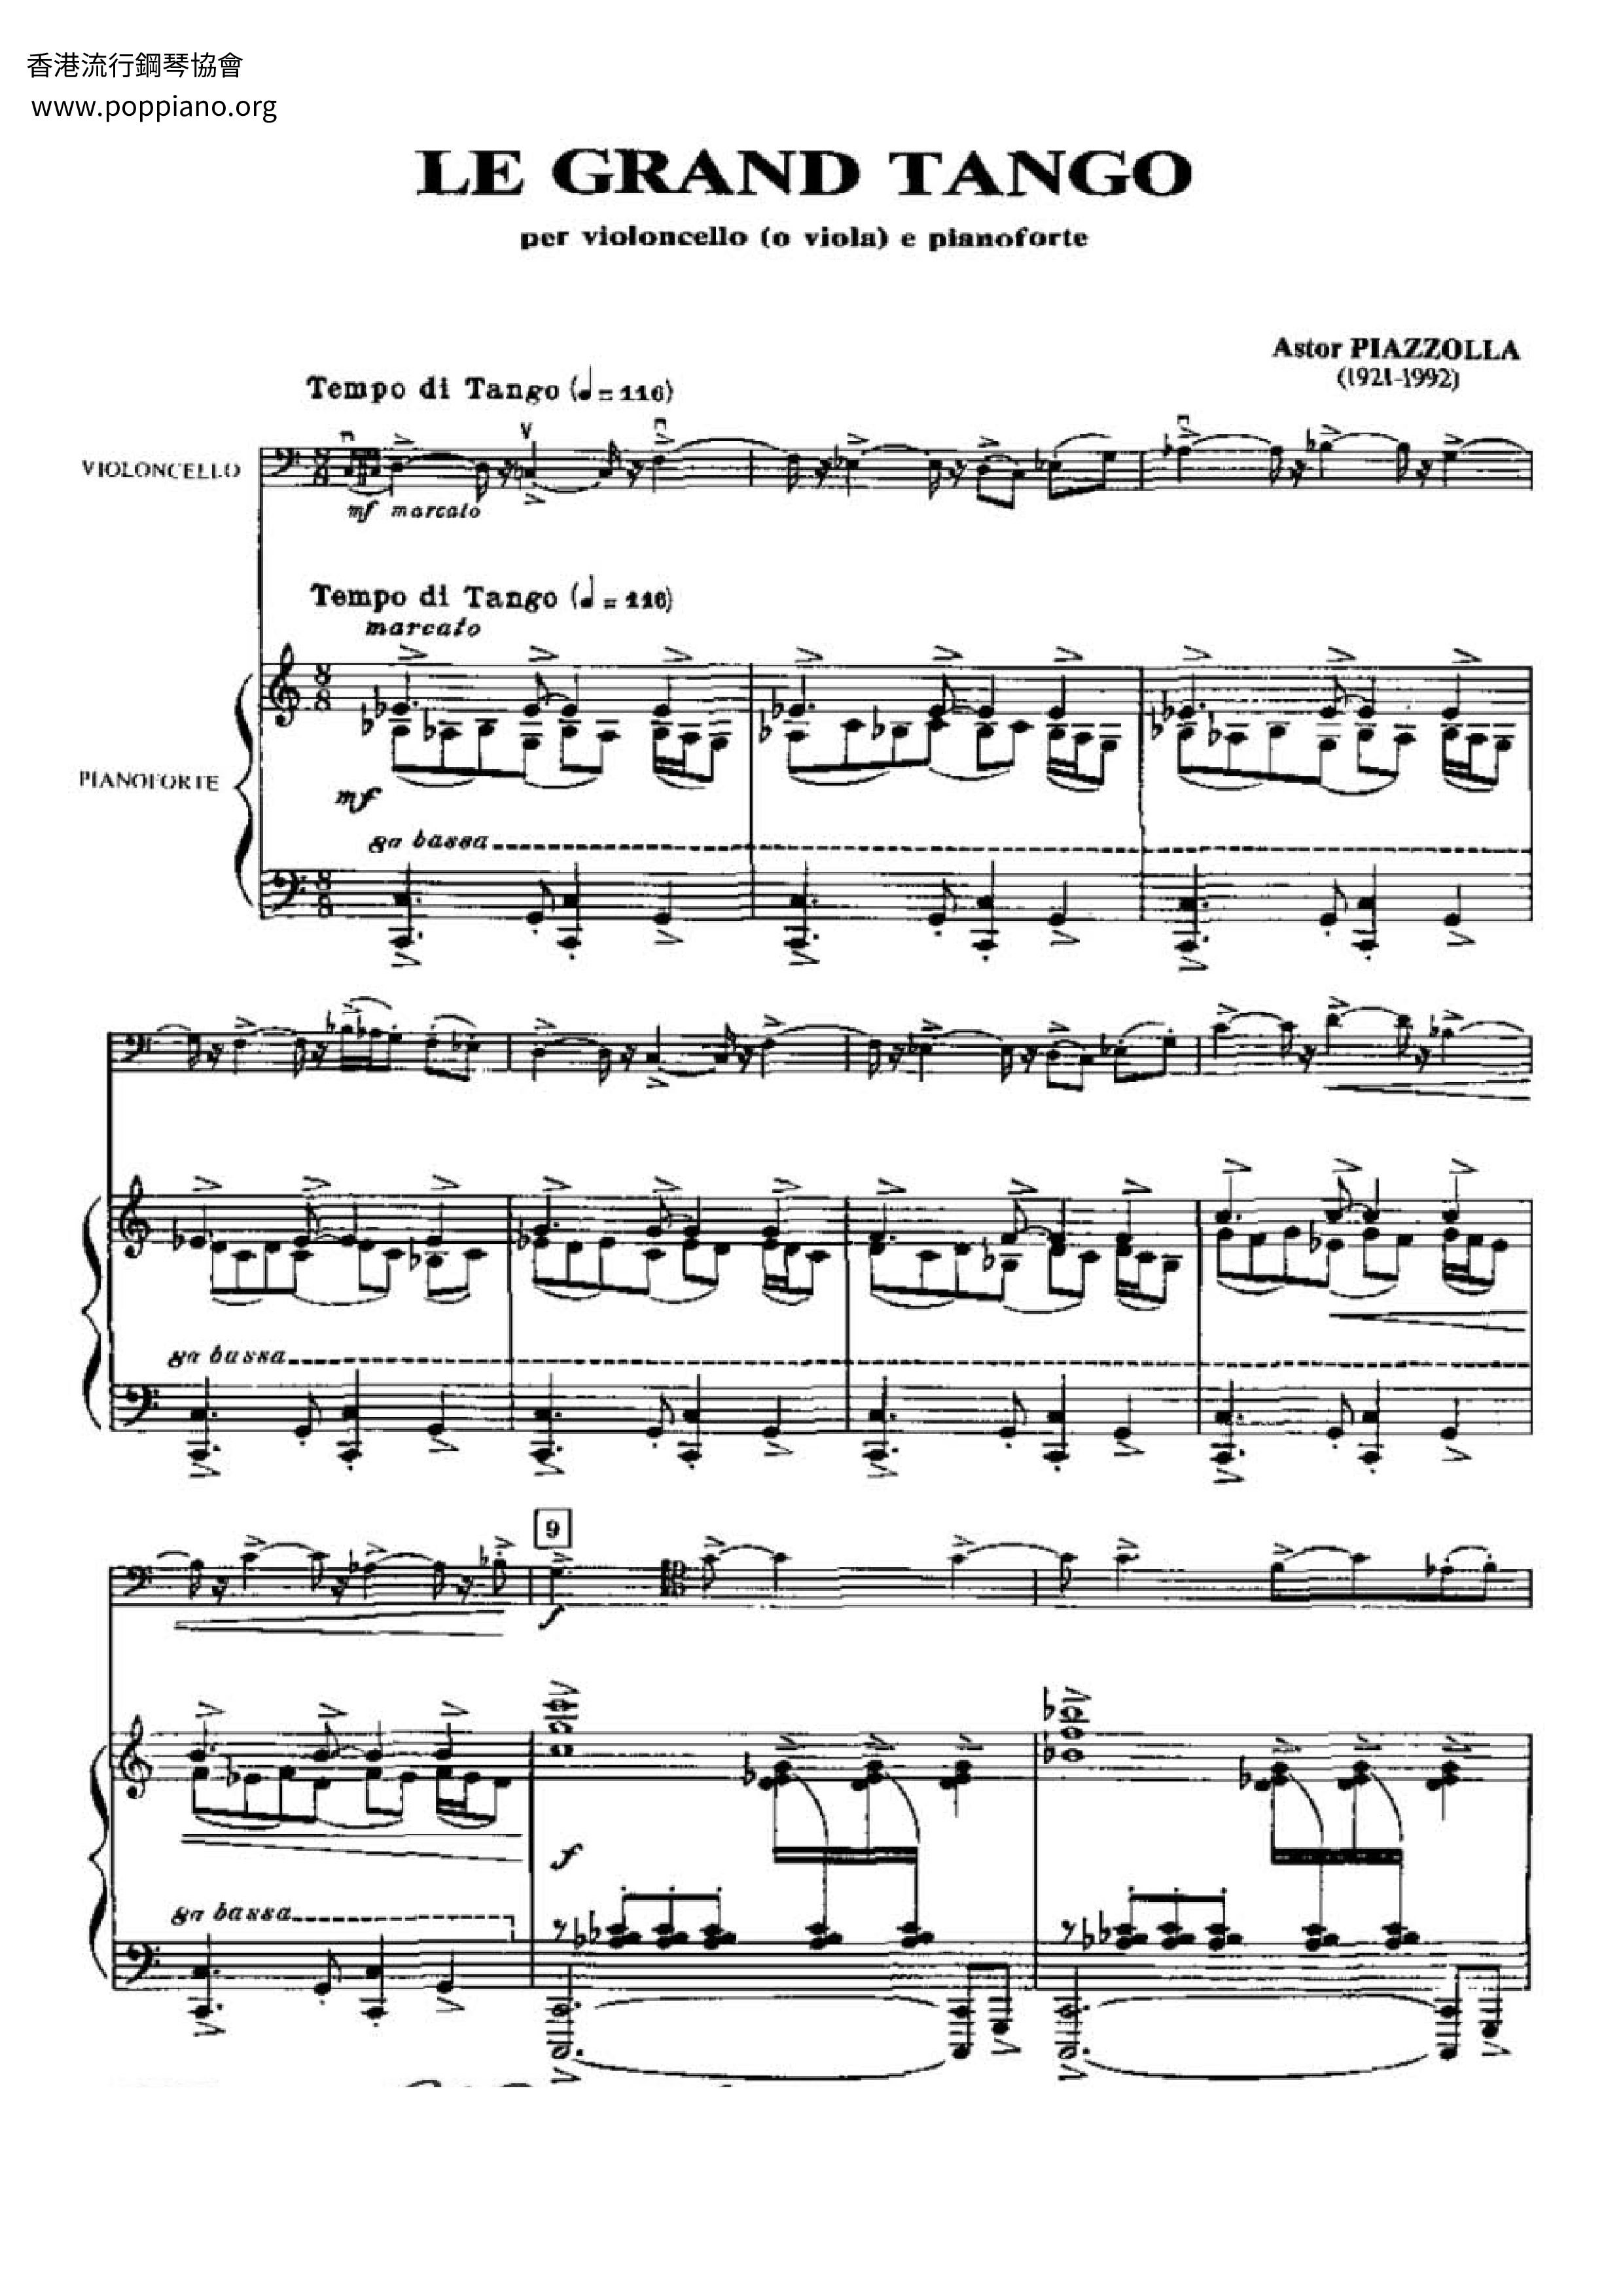 Astor Piazzolla Le Grand Tango Score